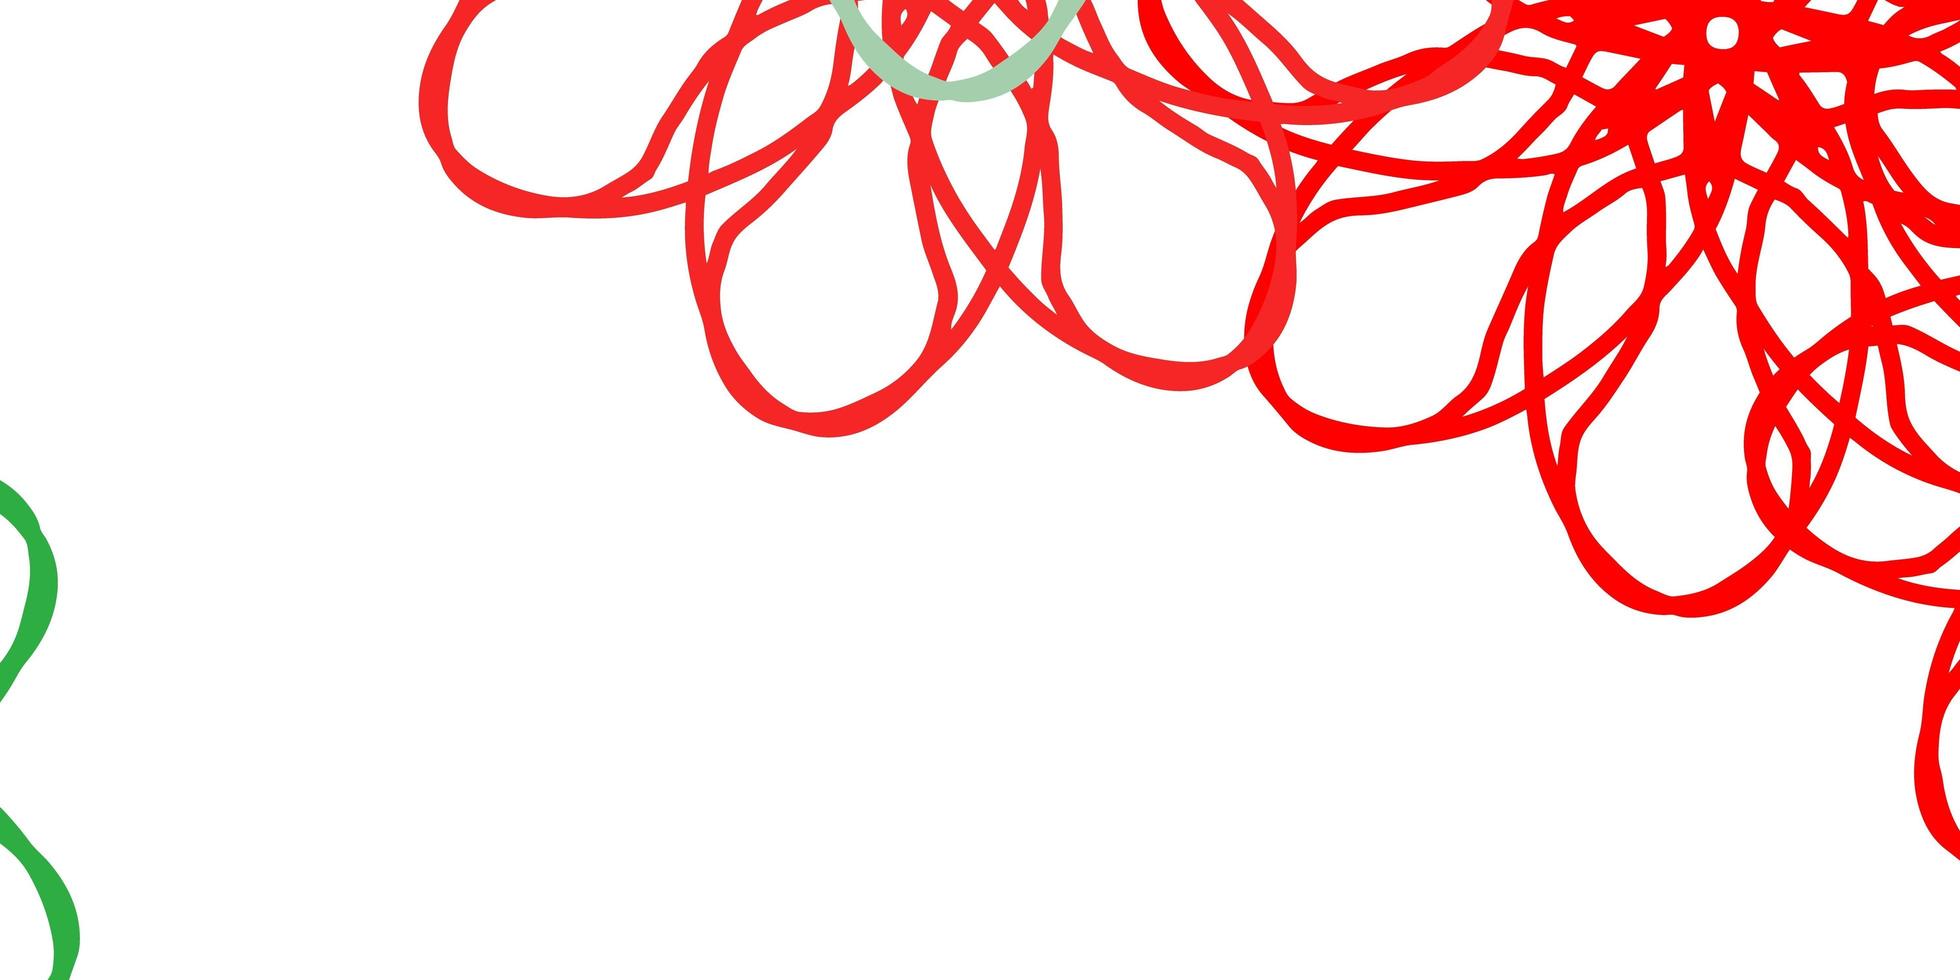 ljus flerfärgad vektor doodle mönster med blommor.